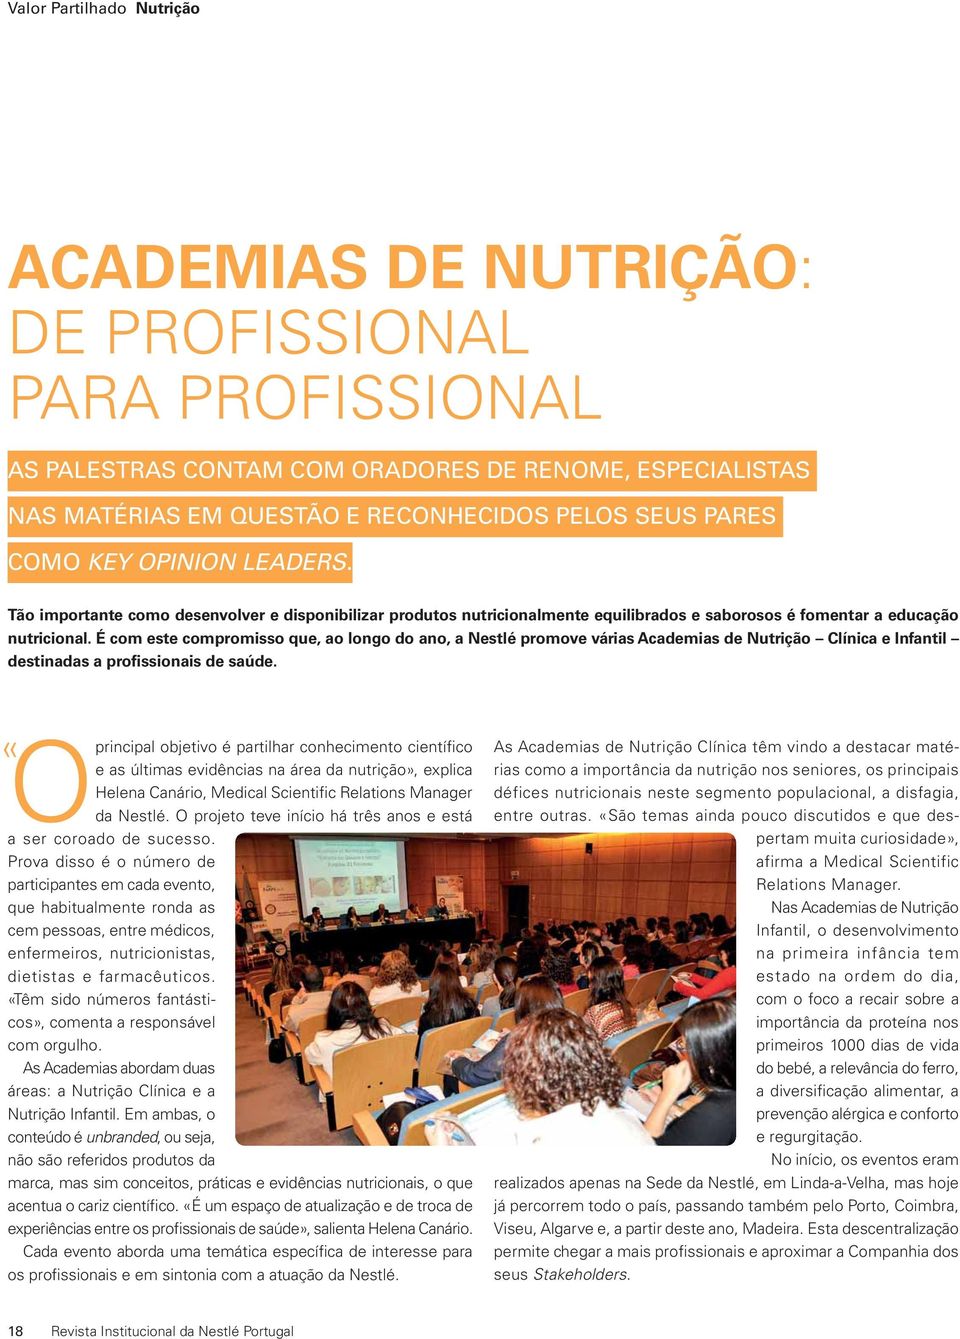 O principal objetivo é partilhar conhecimento científico e as últimas evidências na área da nutrição», explica Helena Canário, Medical Scientific Relations Manager da Nestlé.